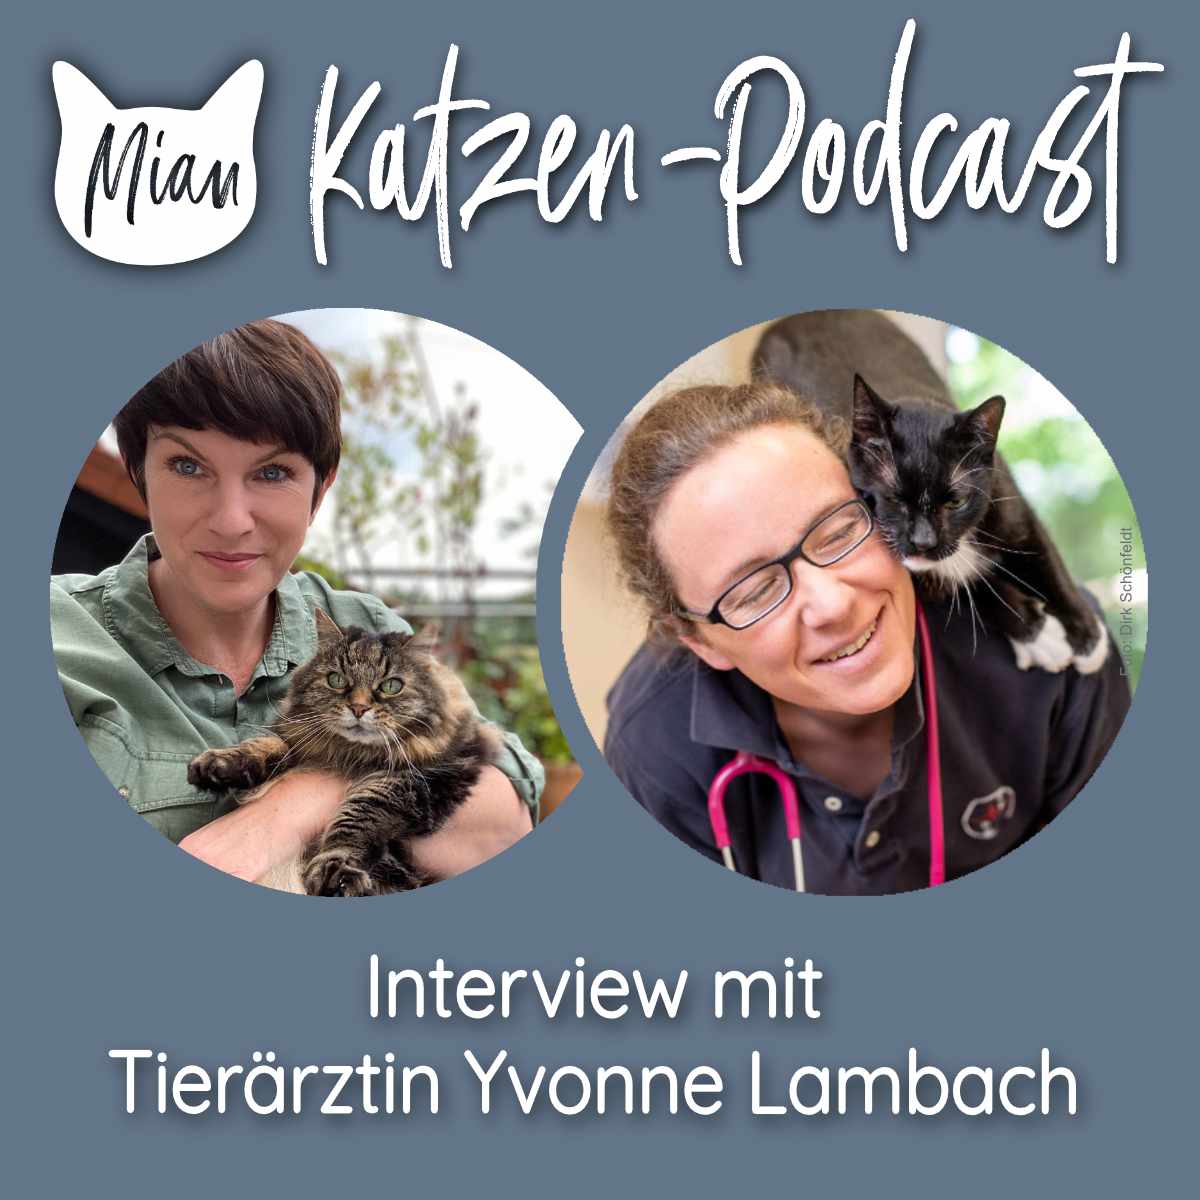 Verhaltensänderungen bei alten Katzen erkennen - Interview mit Tierärztin Yvonne Lambach 1/2 | MKP124